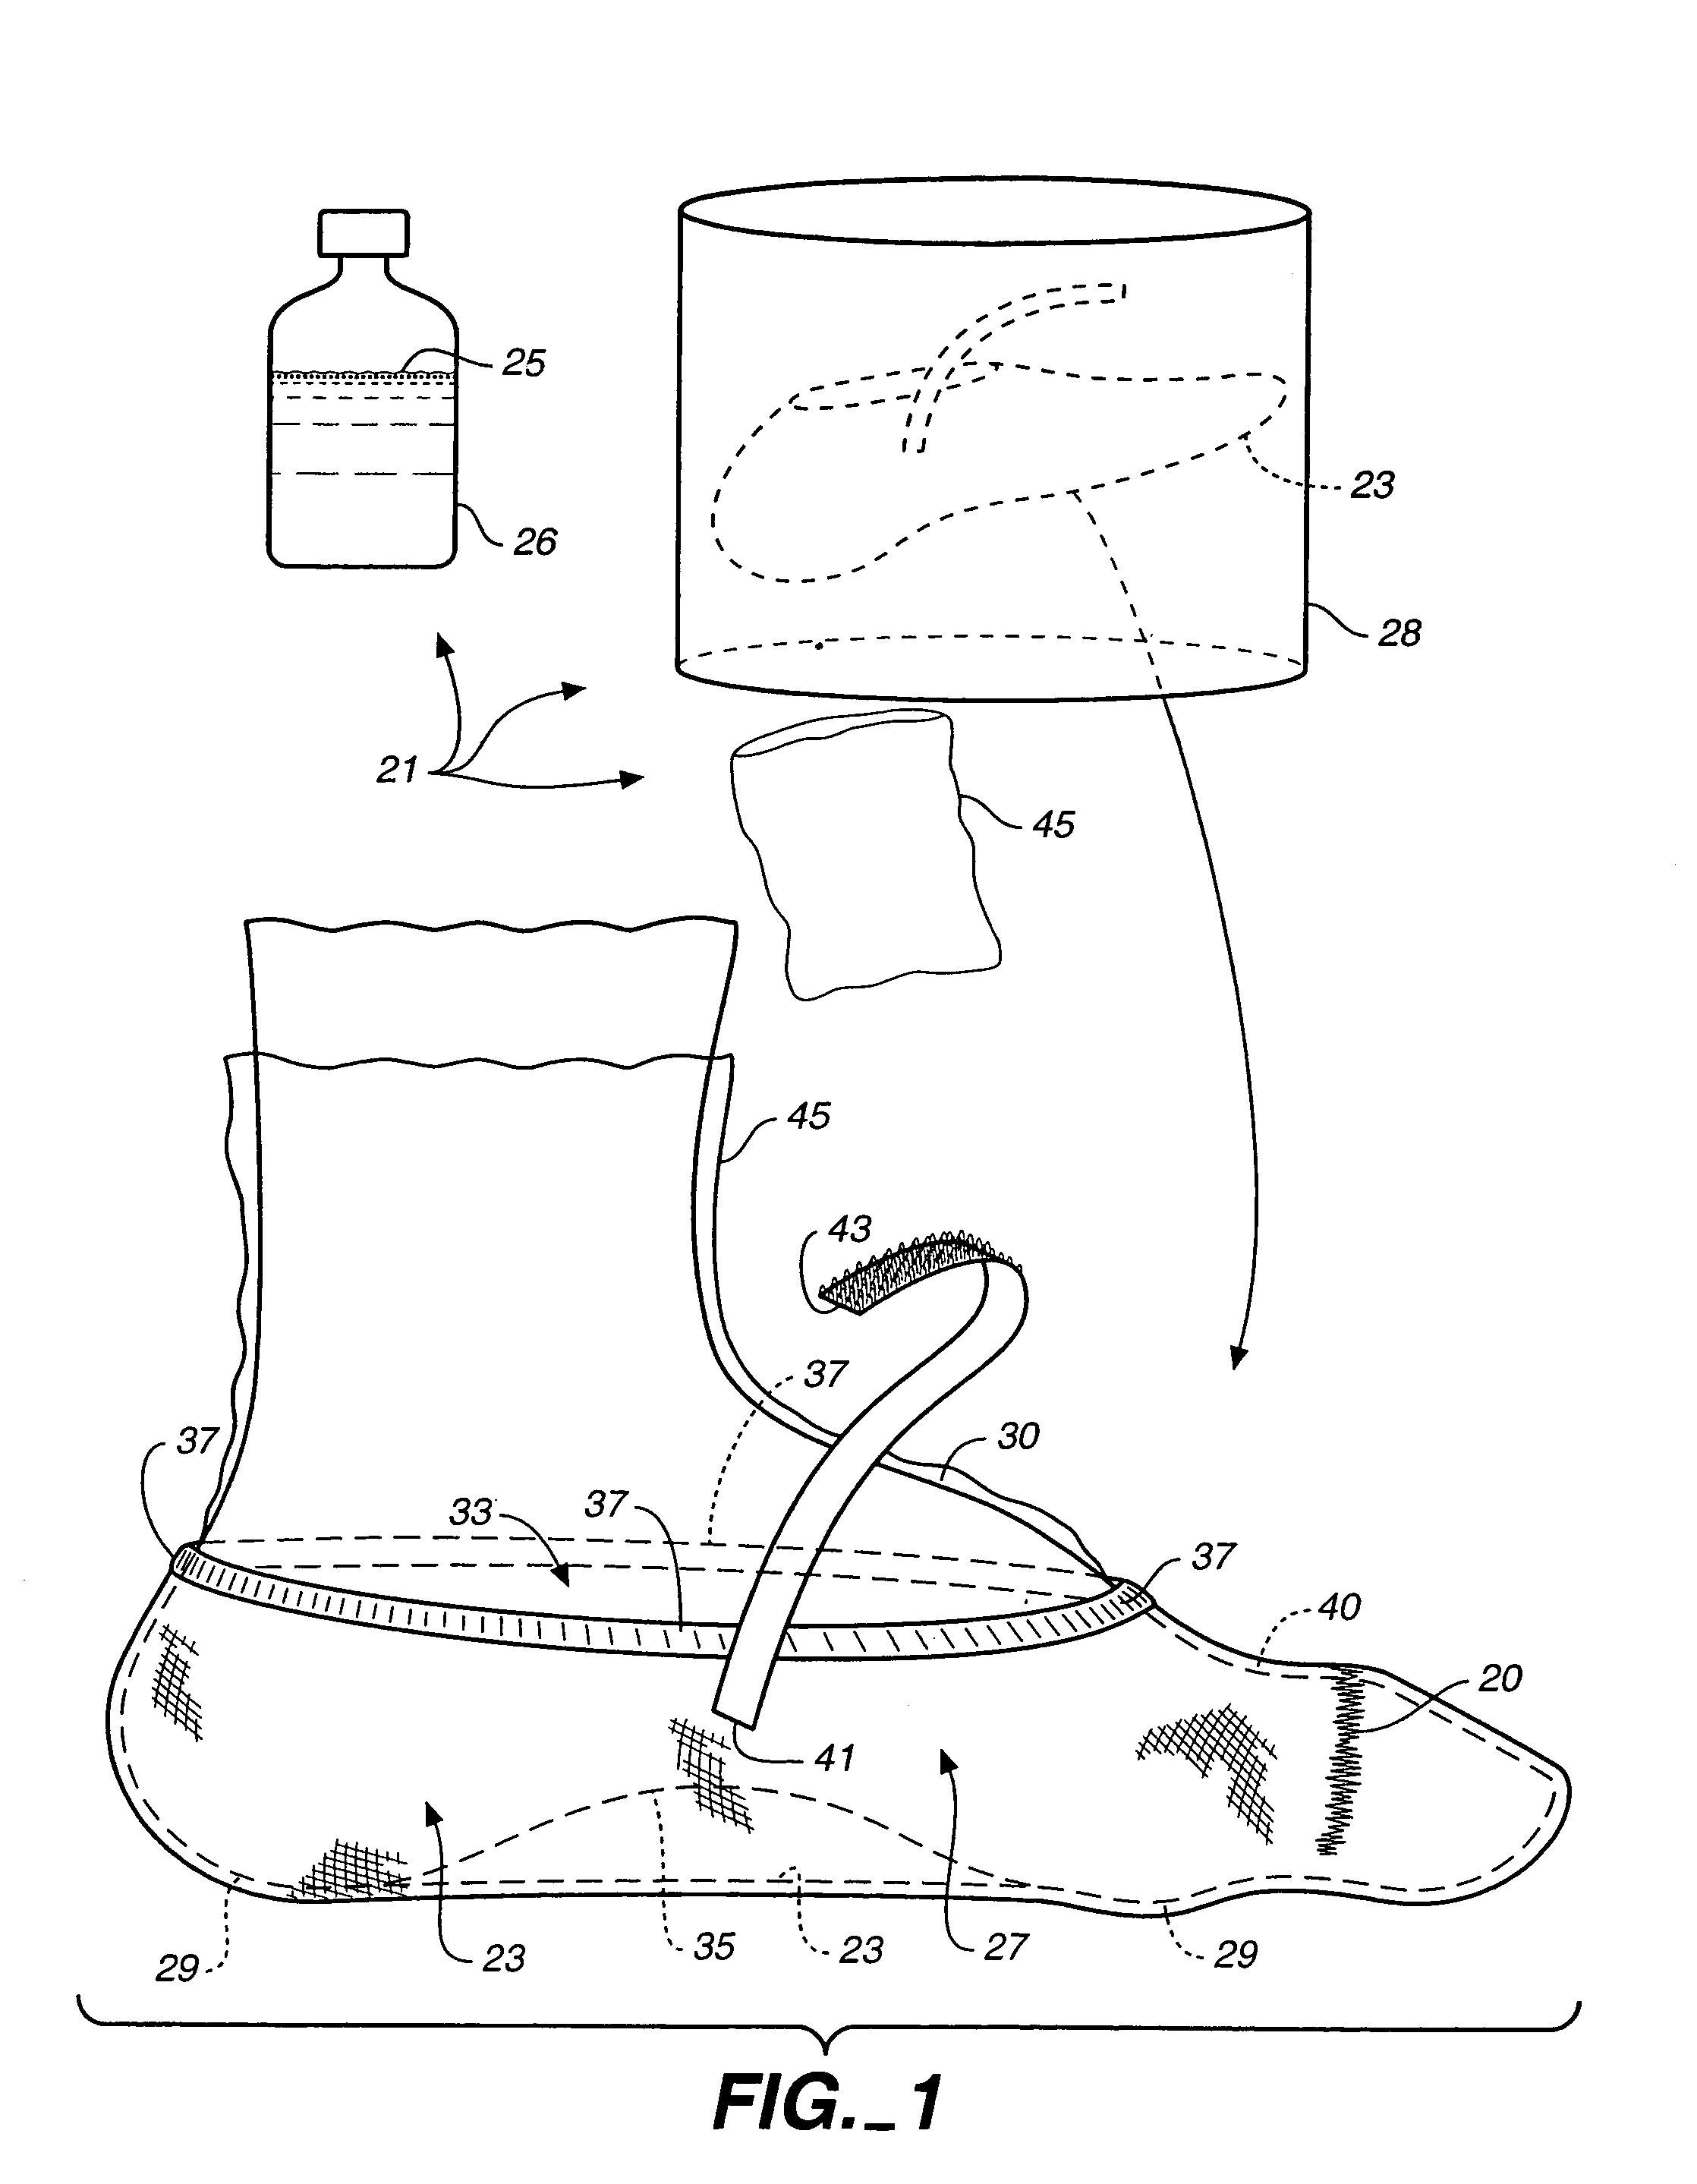 Orthopedic casting slipper kit and method